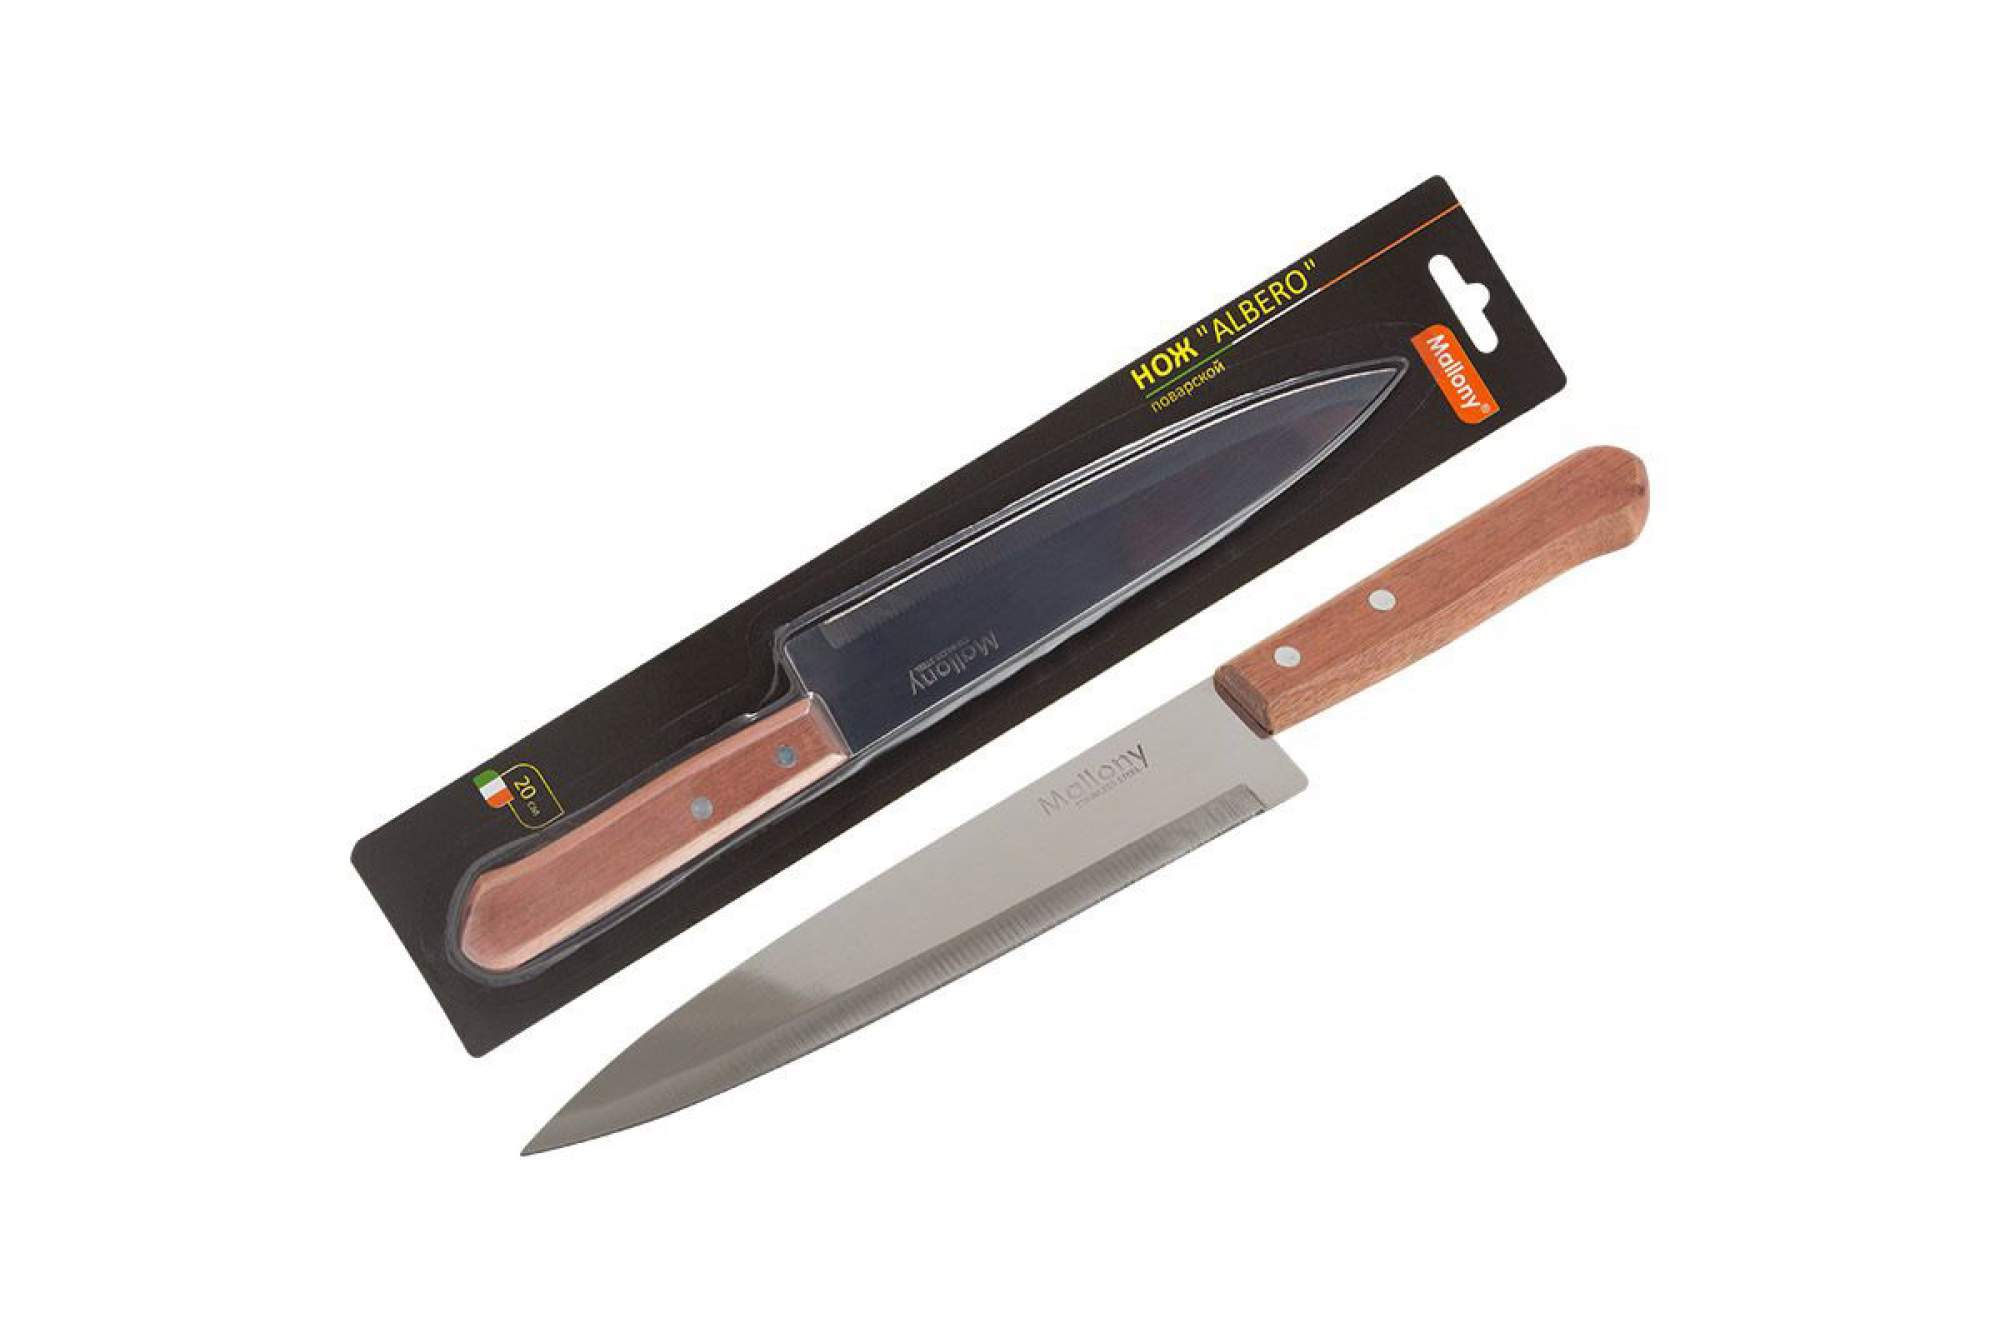 Нож с деревянной рукояткой ALBERO MAL-01AL поварской, 20 см